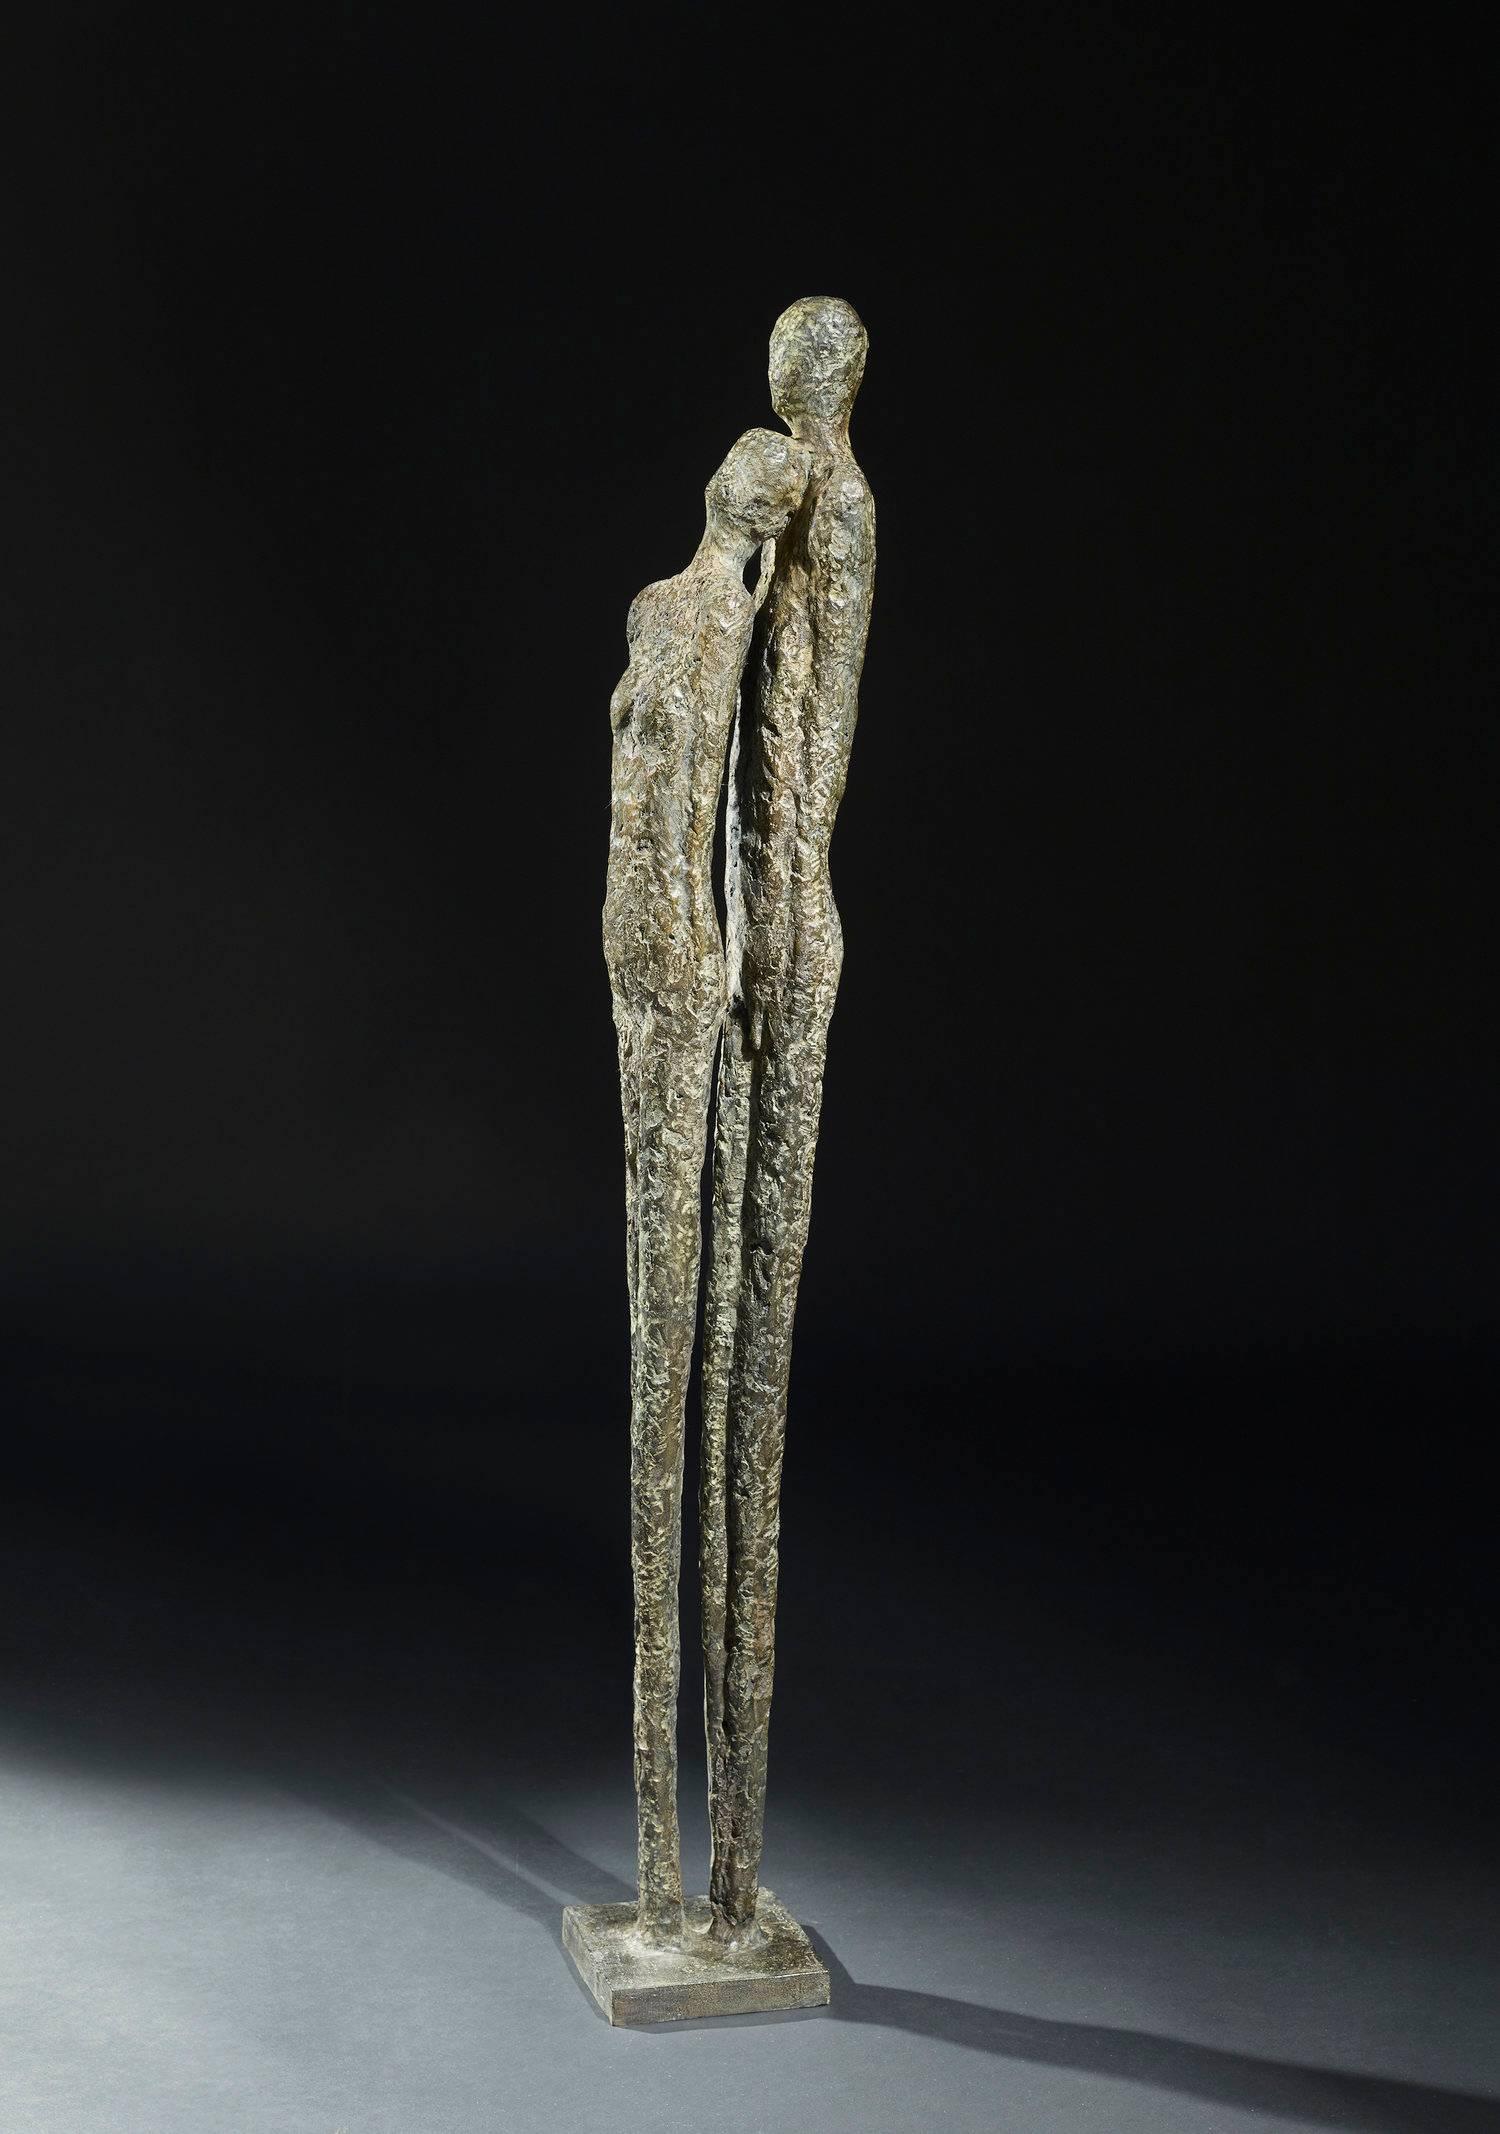 Chantal Lacout Abstract Sculpture - L’un contre l’autre